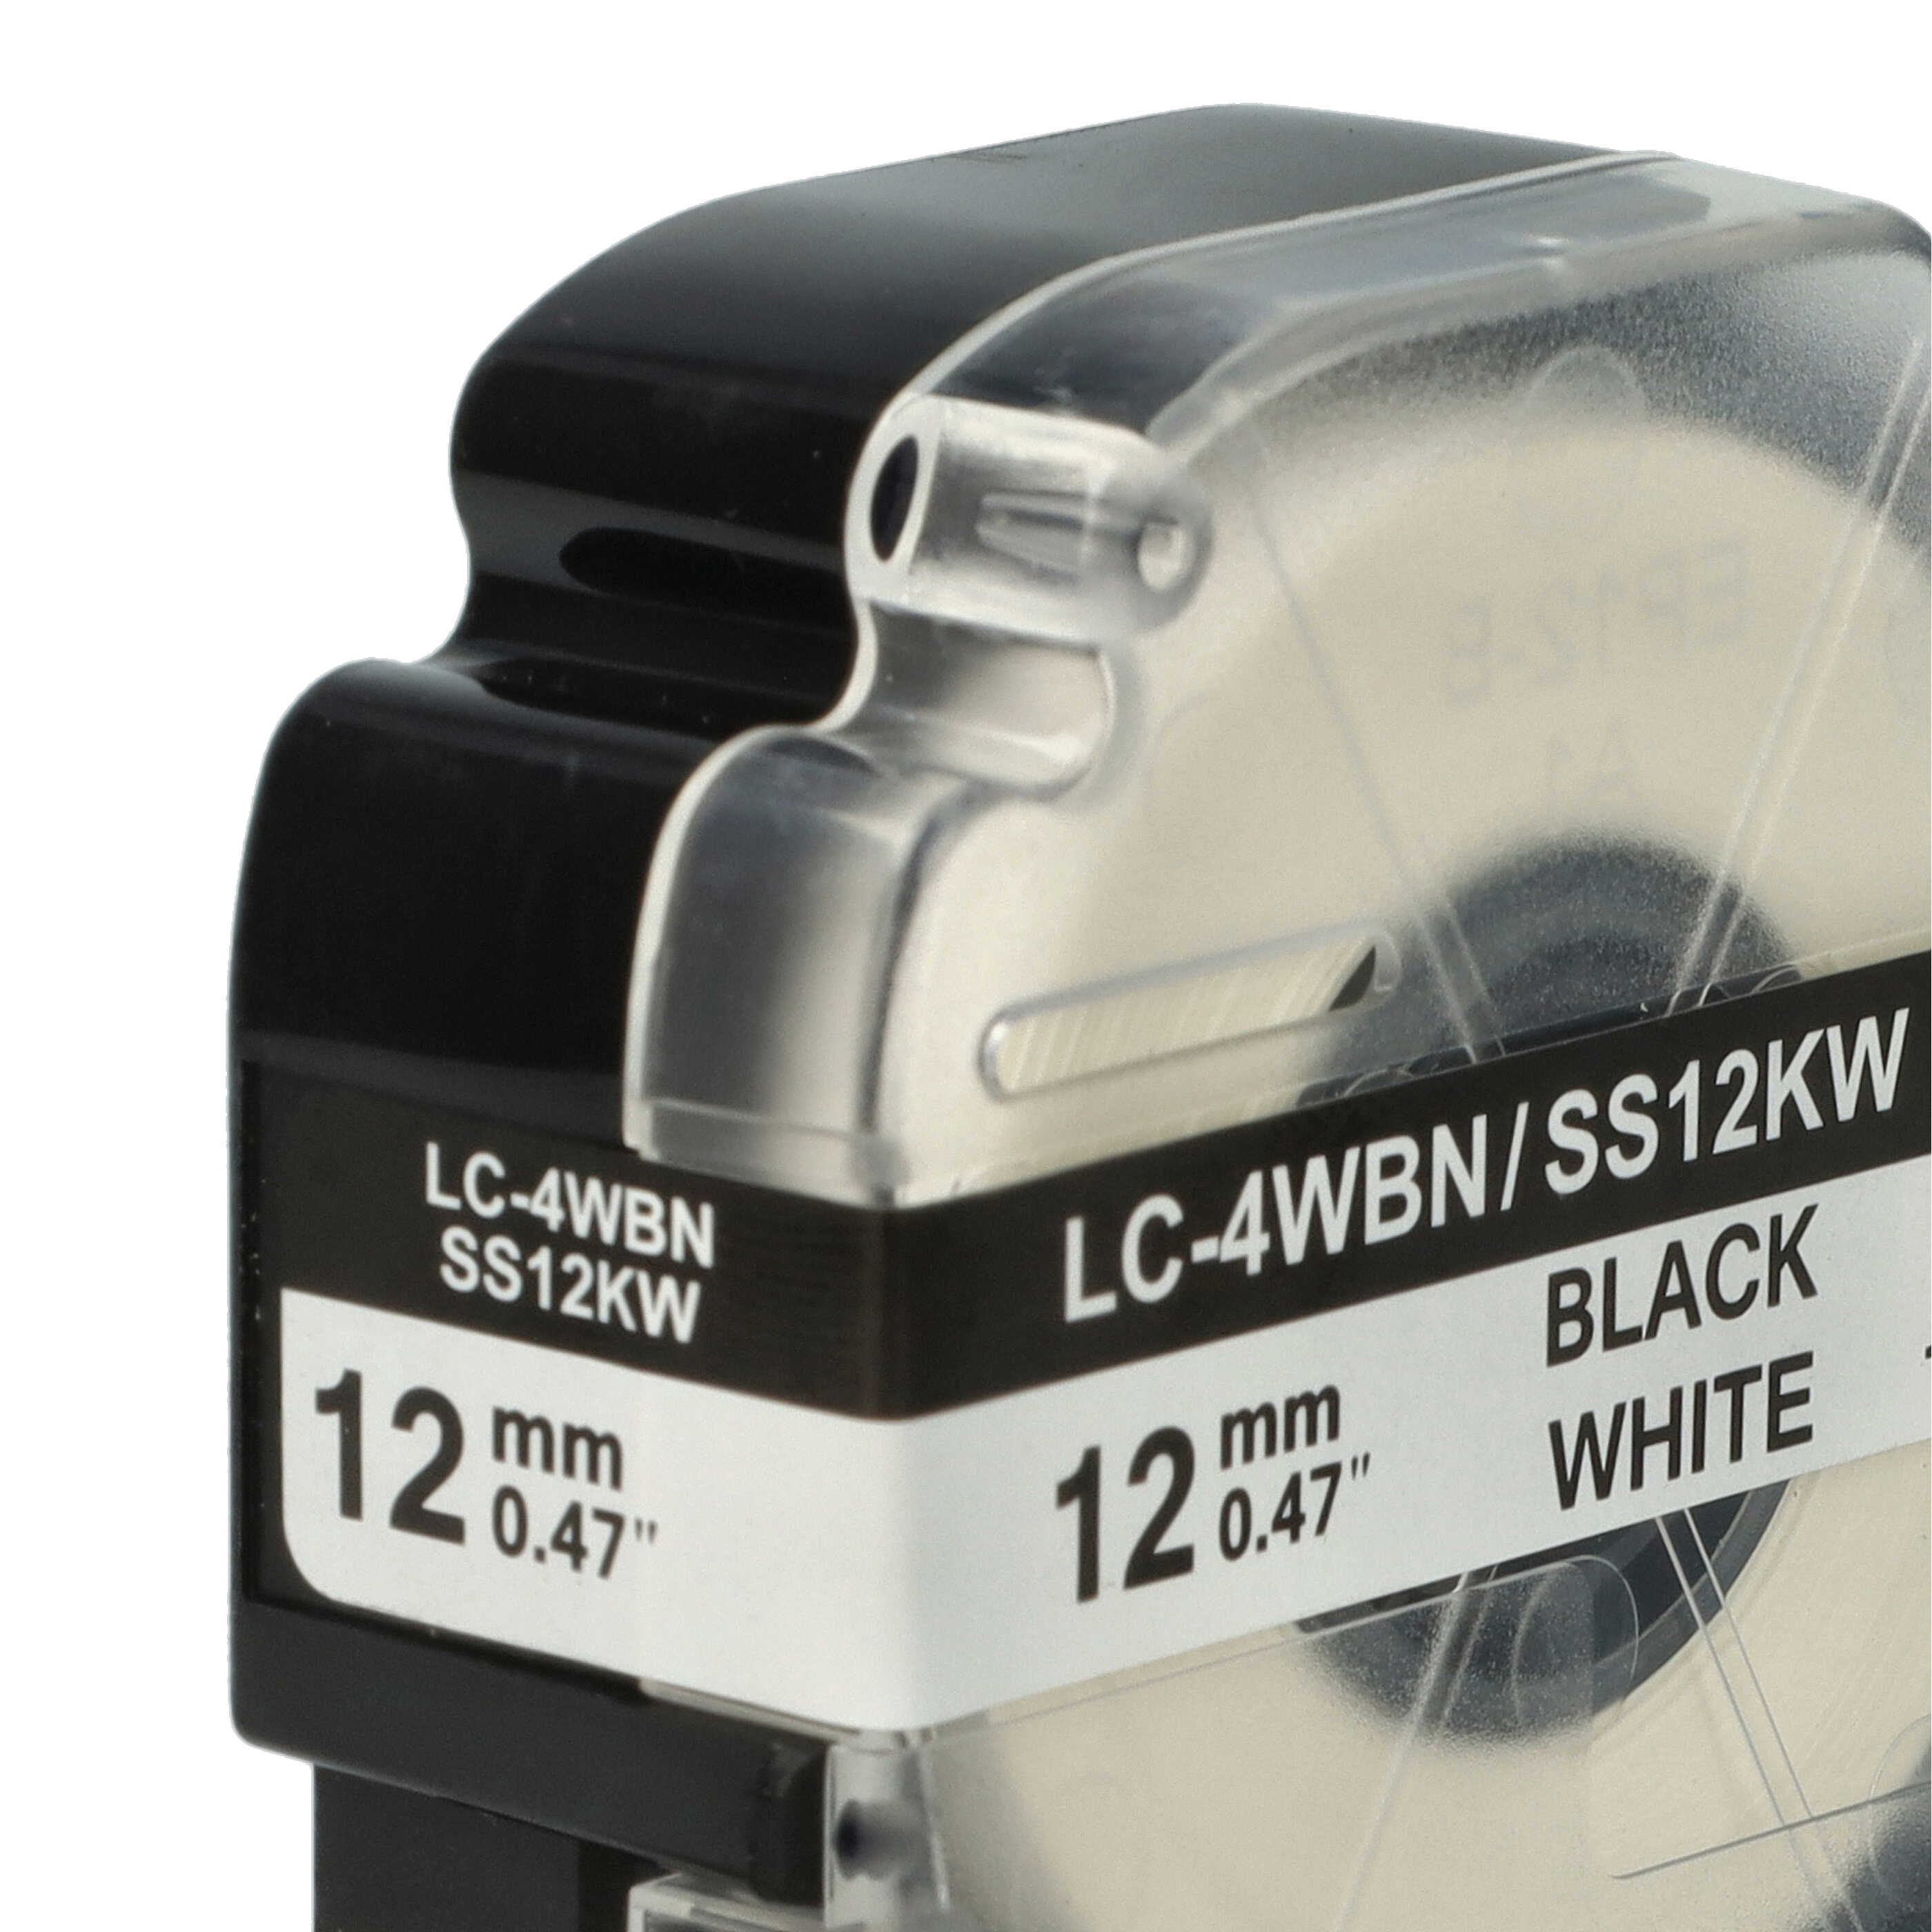 3x Cassetta nastro sostituisce Epson SS12KW, LC-4WBN per etichettatrice Epson 12mm nero su bianco